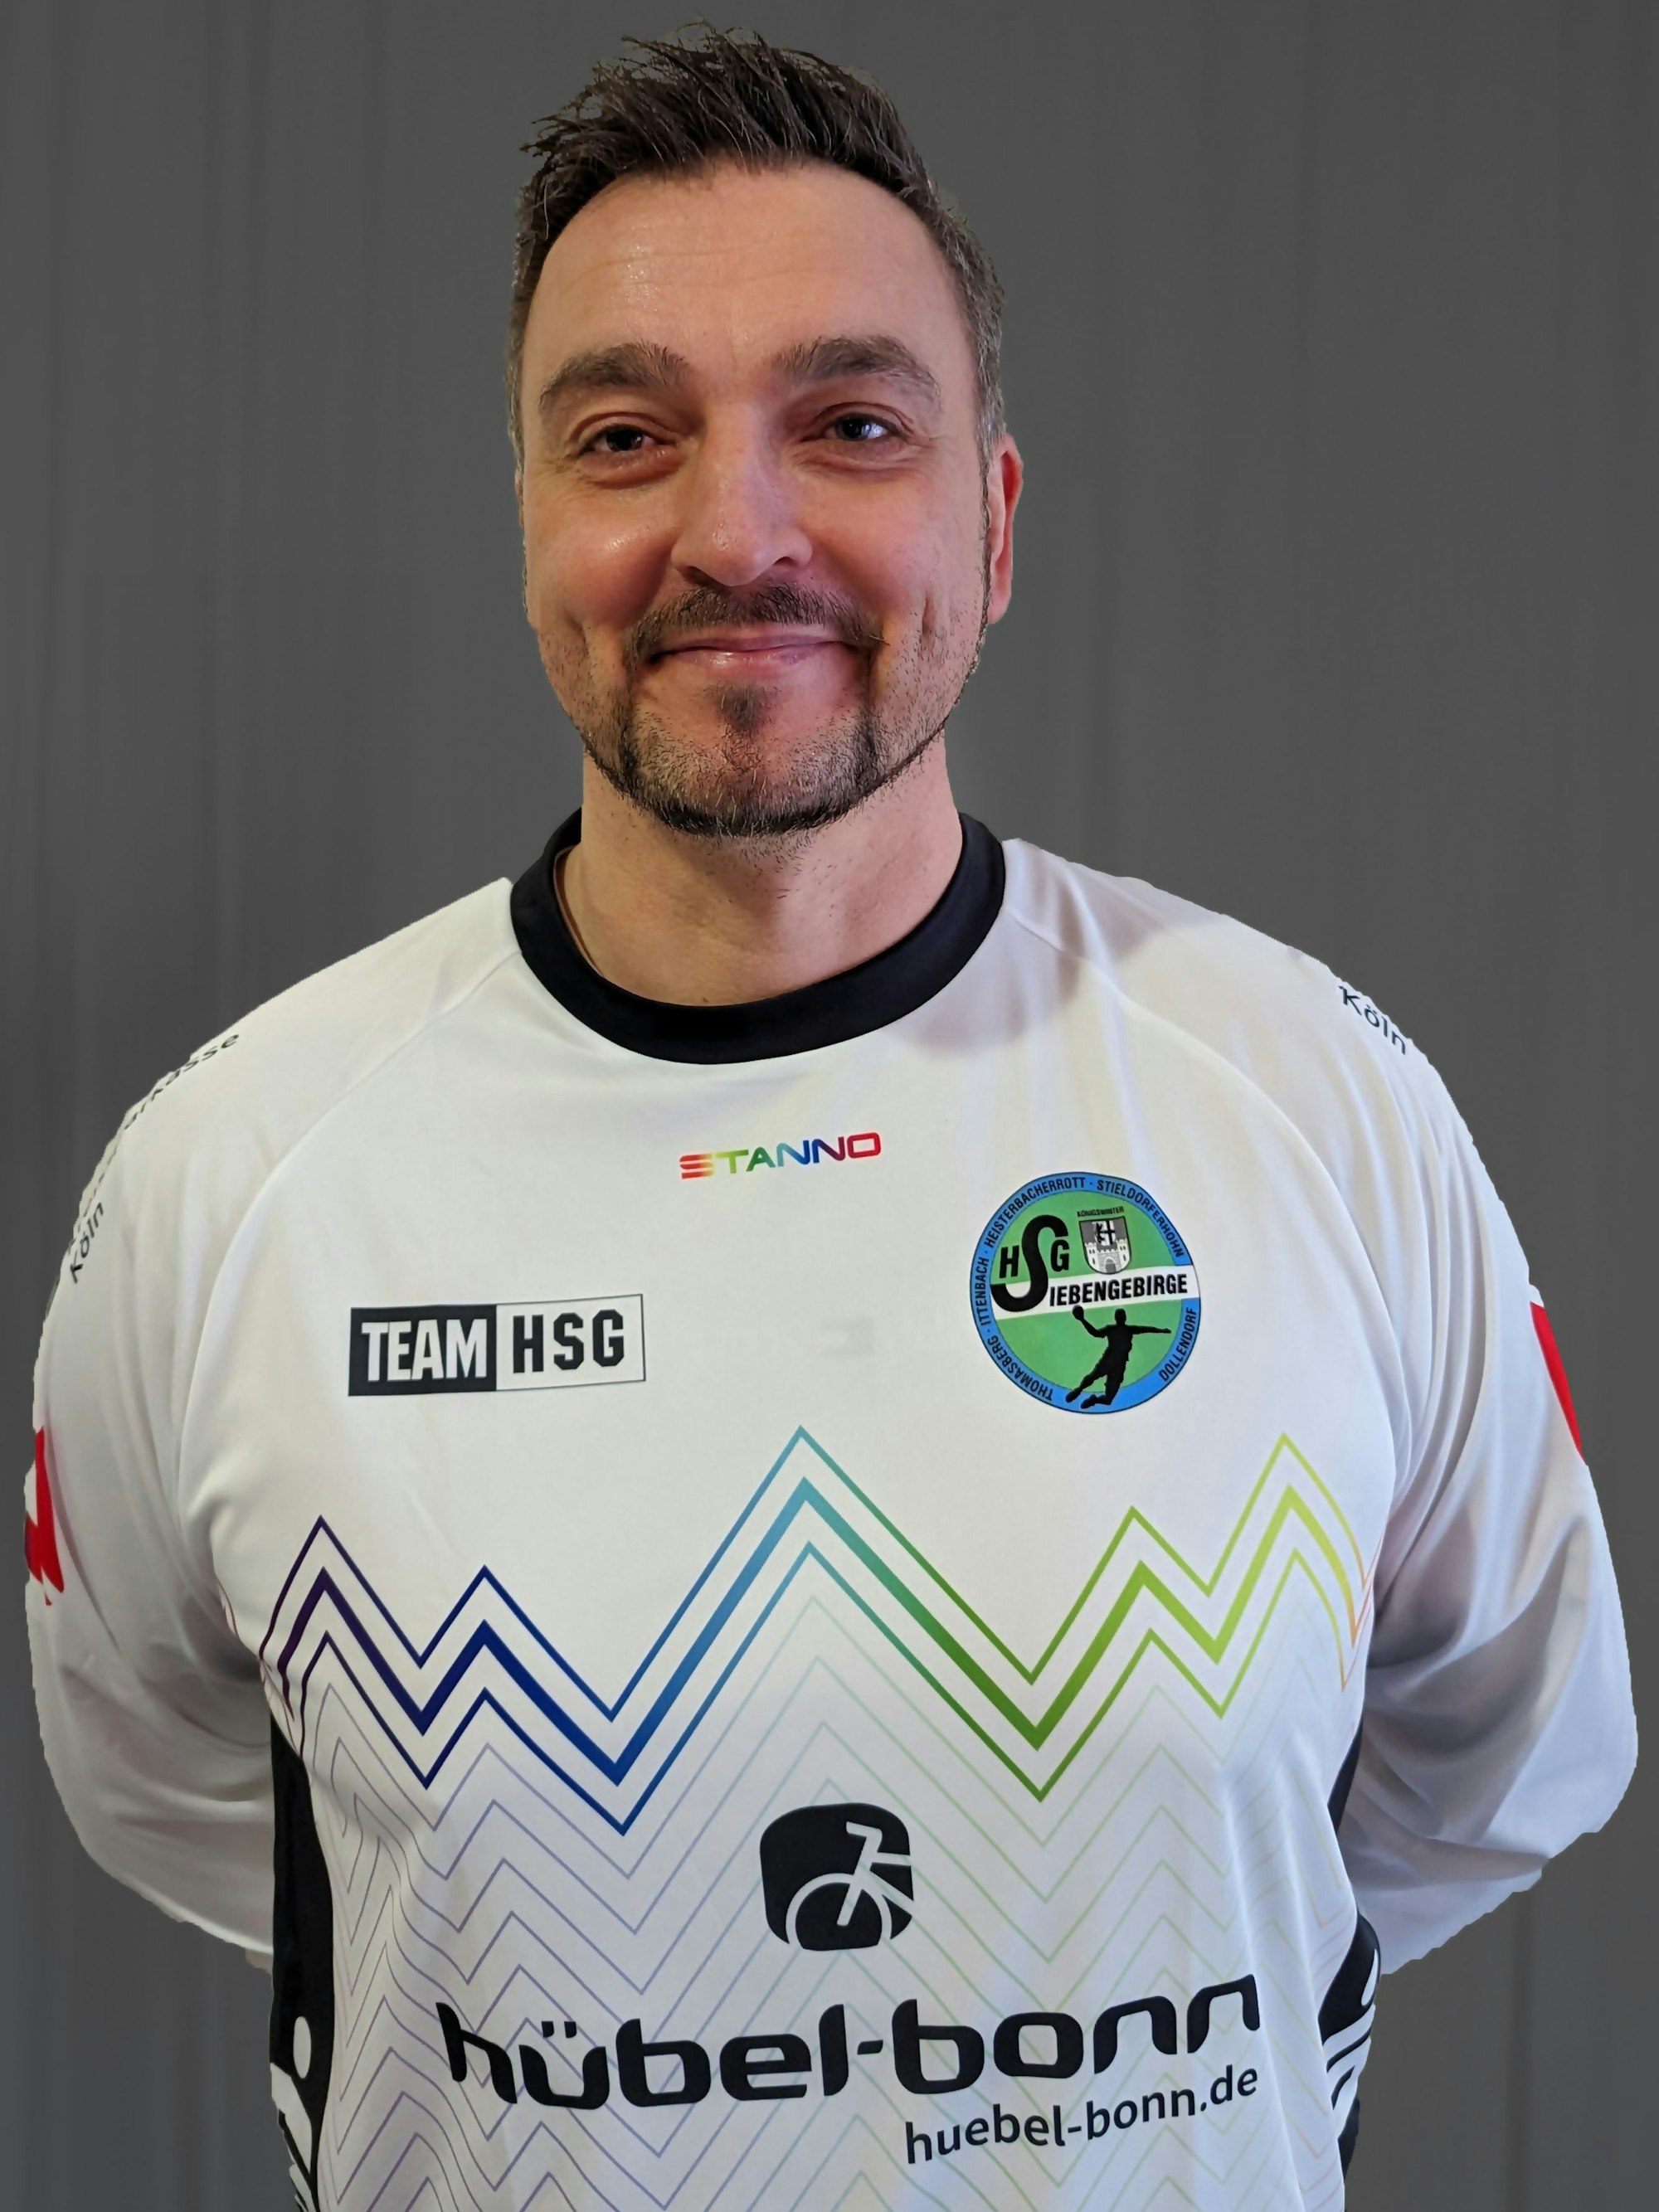 Marcel Trinks (45) ist Jugendkoordinator bei der HSG Siebengebirge, dem mitgliederstärksten Handball-Verein im rechtsrheinischen Rhein-Sieg-Kreis.